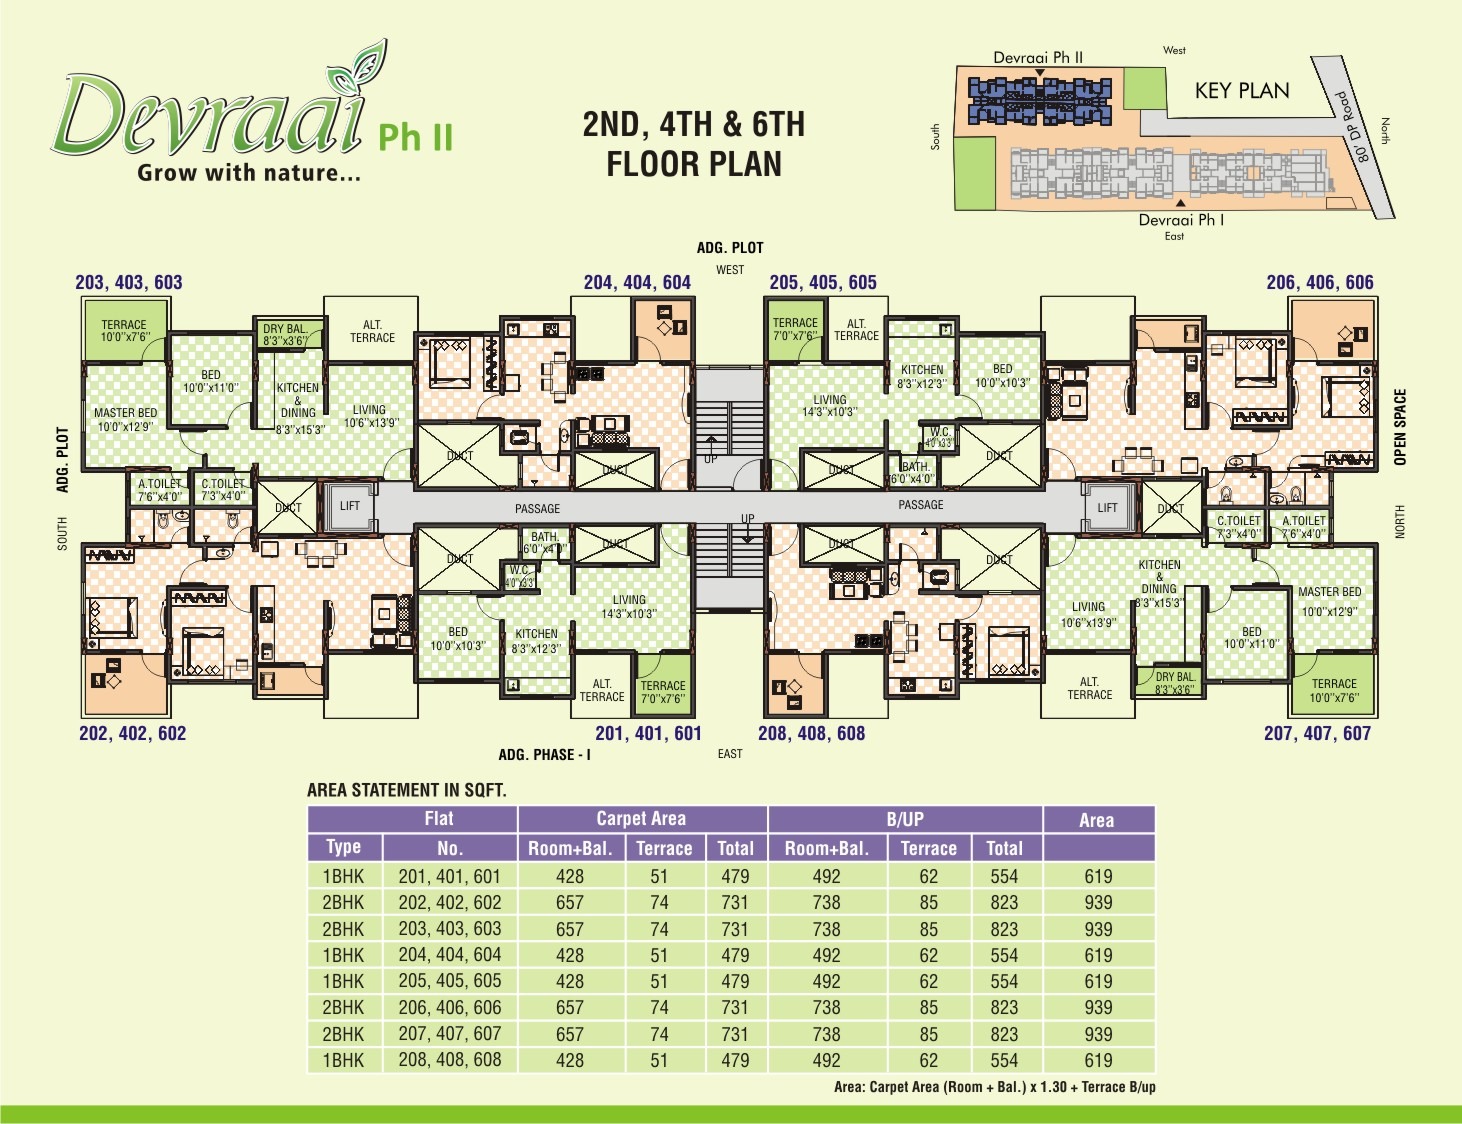 Dhruva- 2nd, 4th & 6th Floor Plan